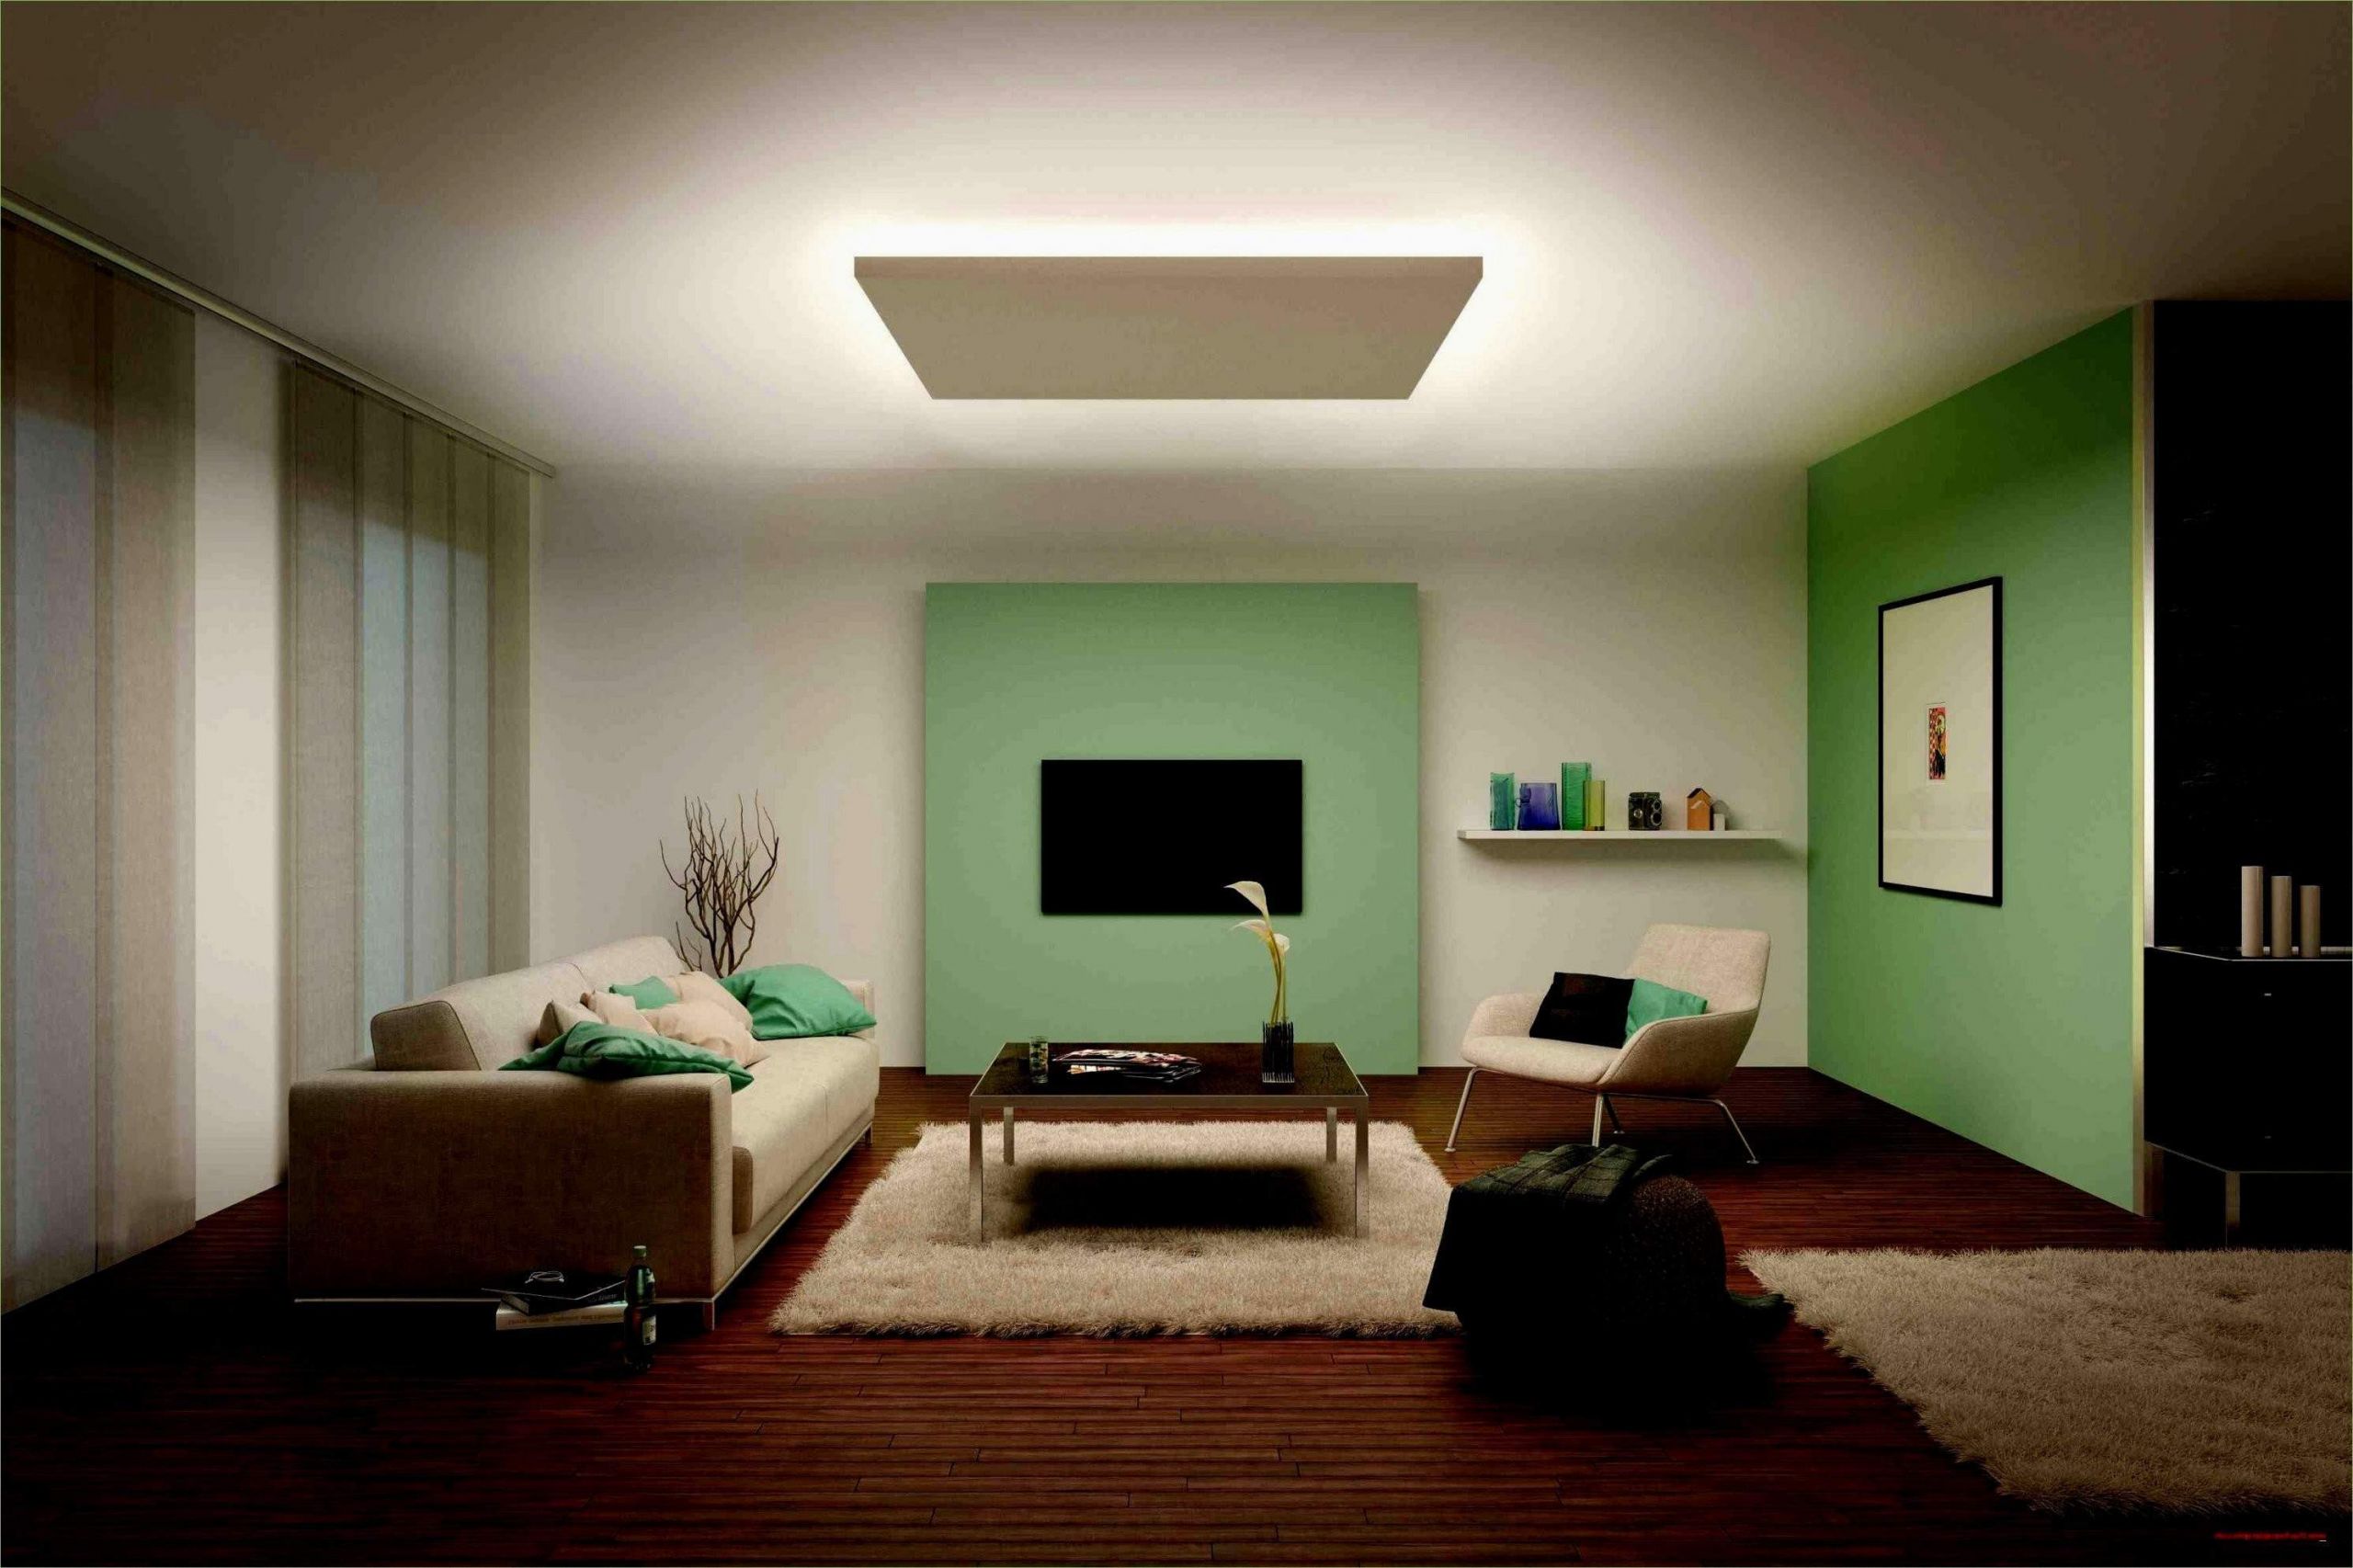 lampe wohnzimmer decke das beste von 37 frisch lampe wohnzimmer decke of lampe wohnzimmer decke